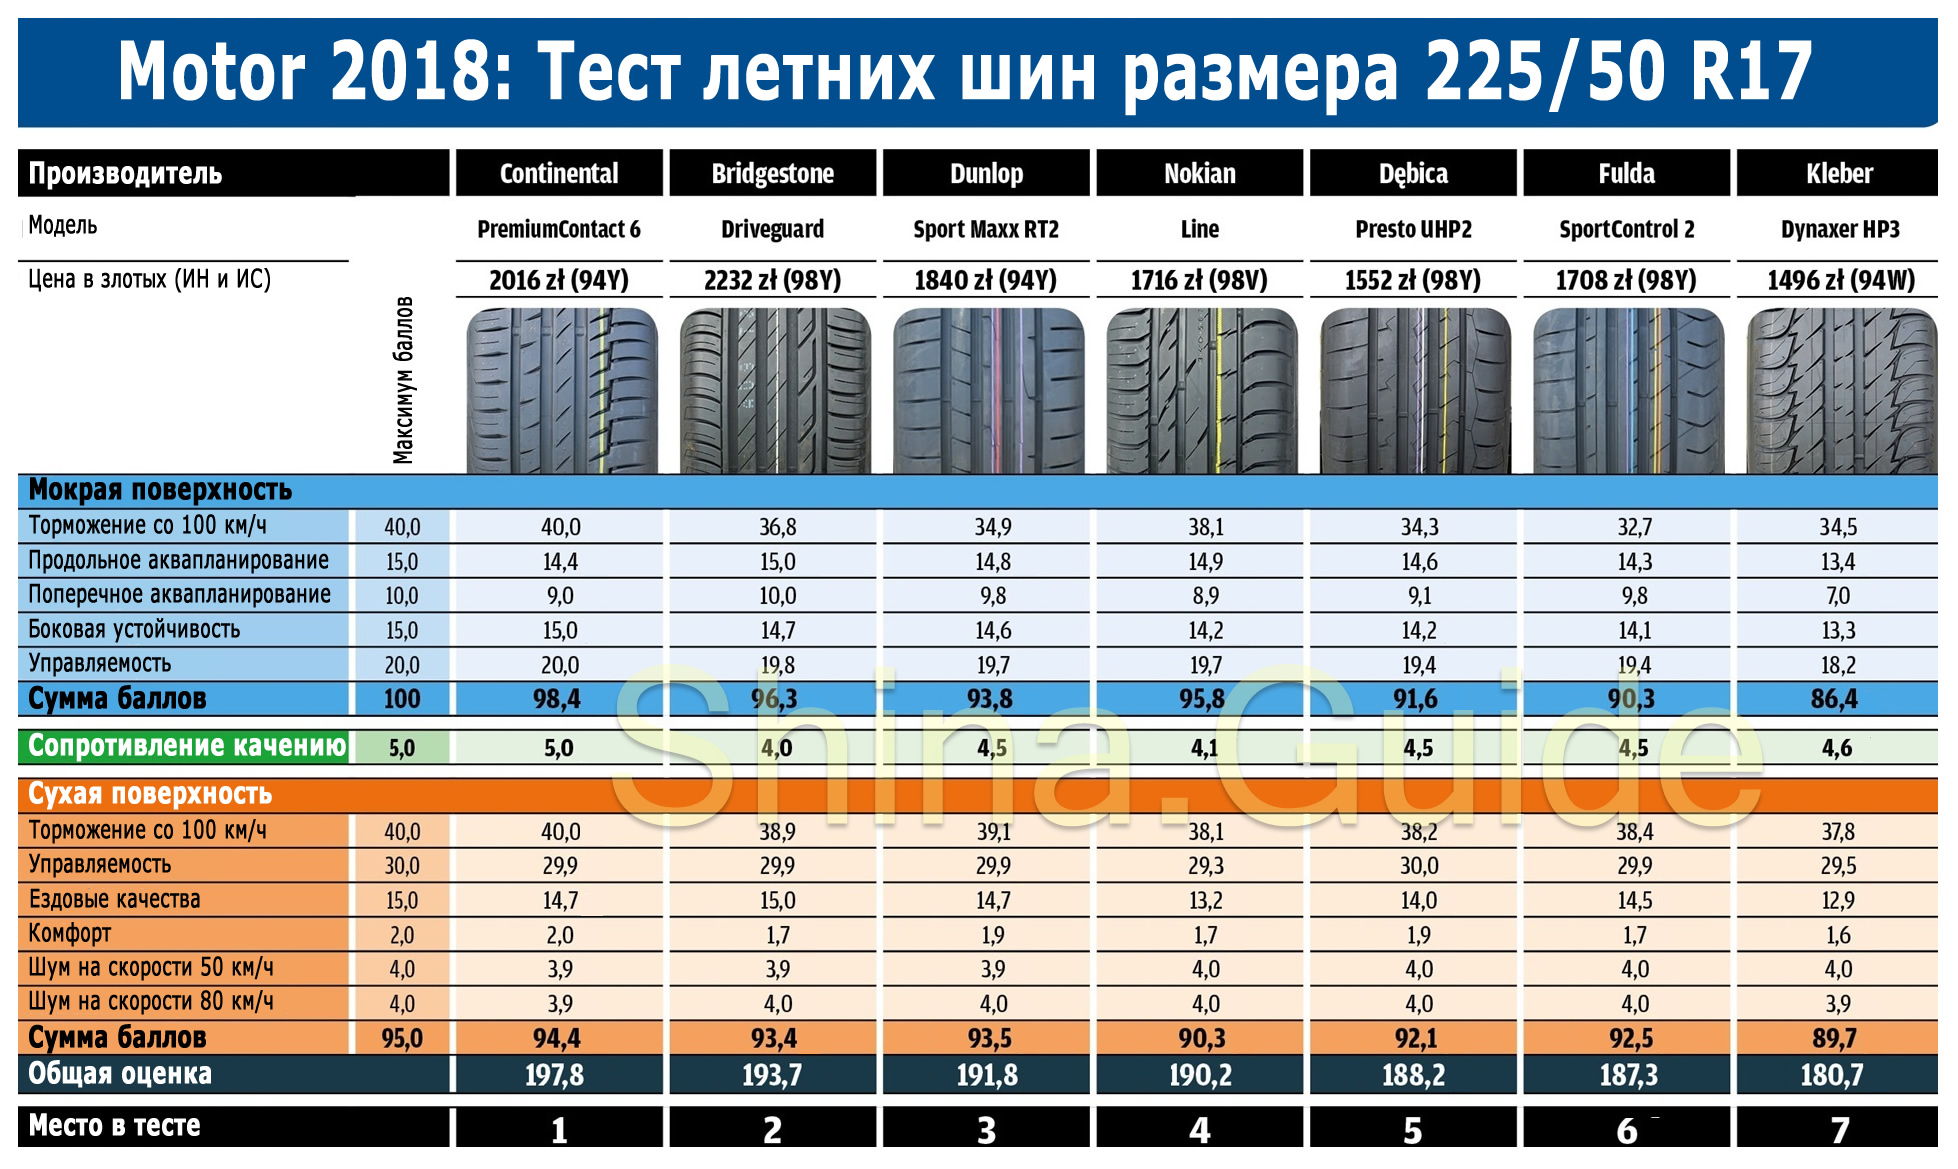 Сводная таблица результатов теста летних шин размера 225/50 R17. Motor, 2018